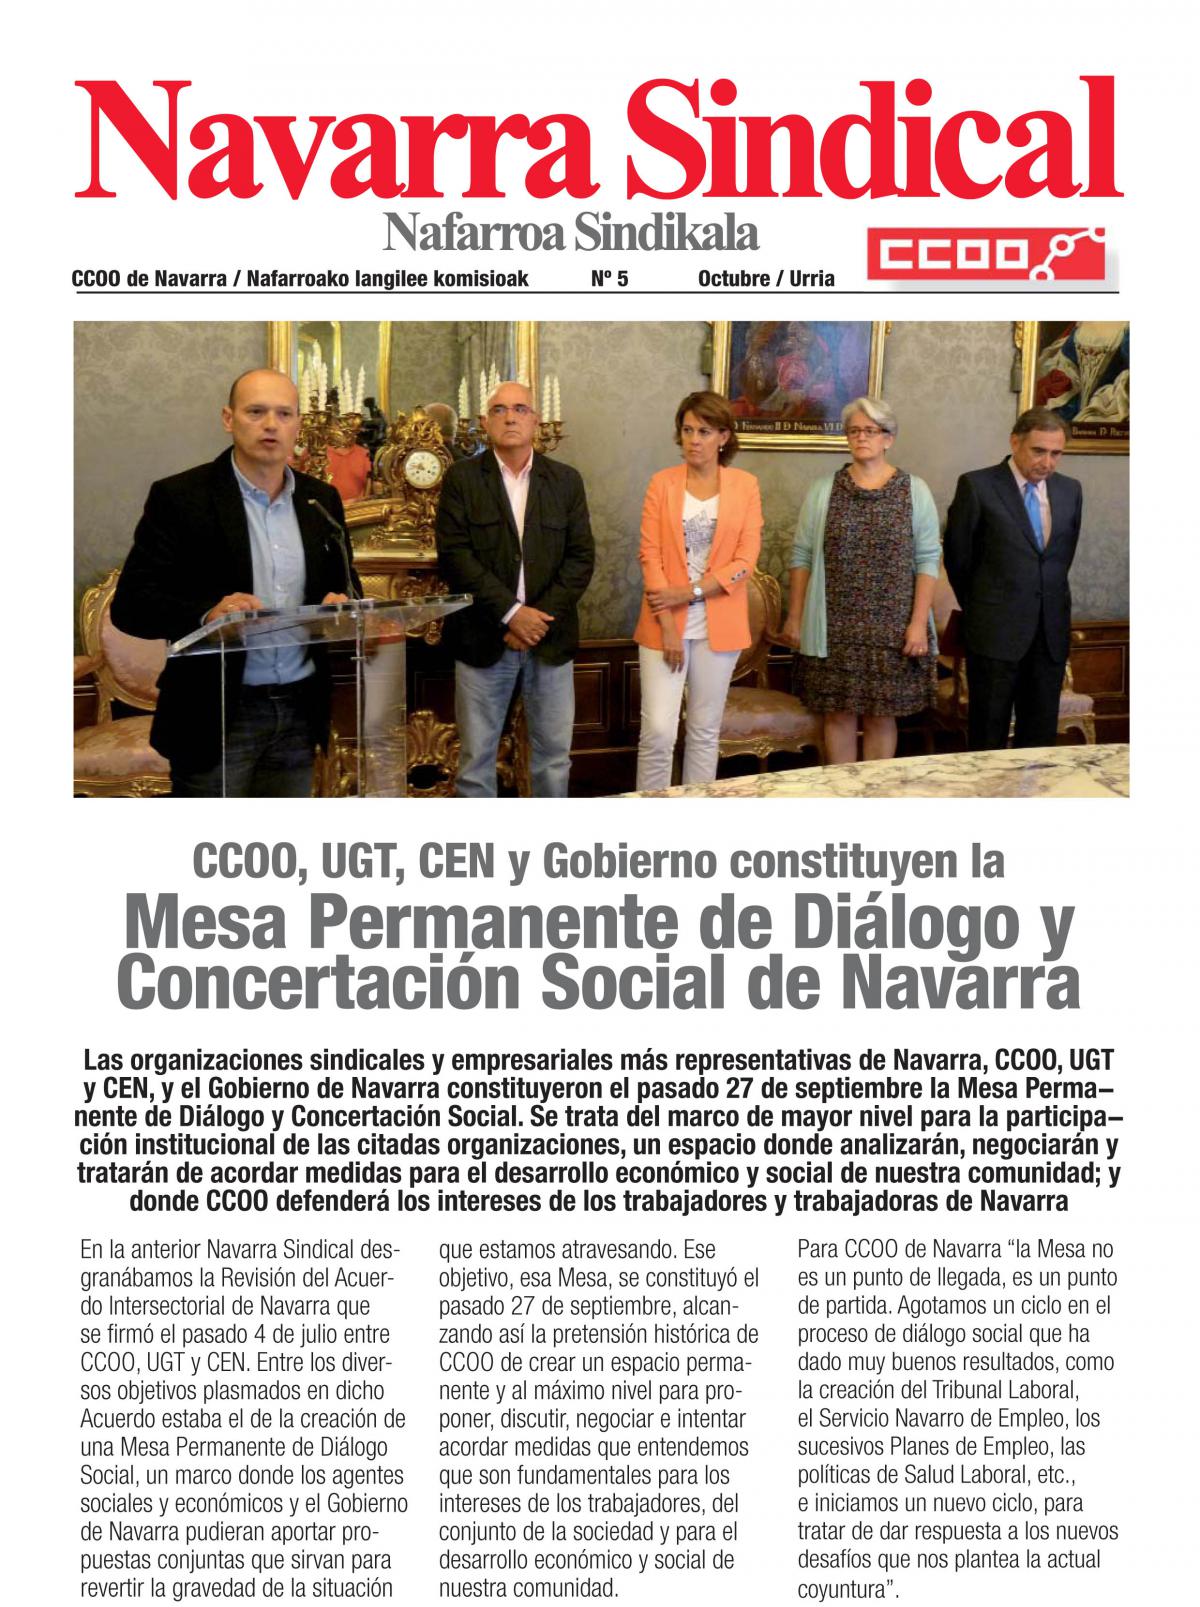 CCOO, UGT, CEN y Gobierno constituyen la Mesa Permanente de Dilogo y Concertacin Social de Navarra